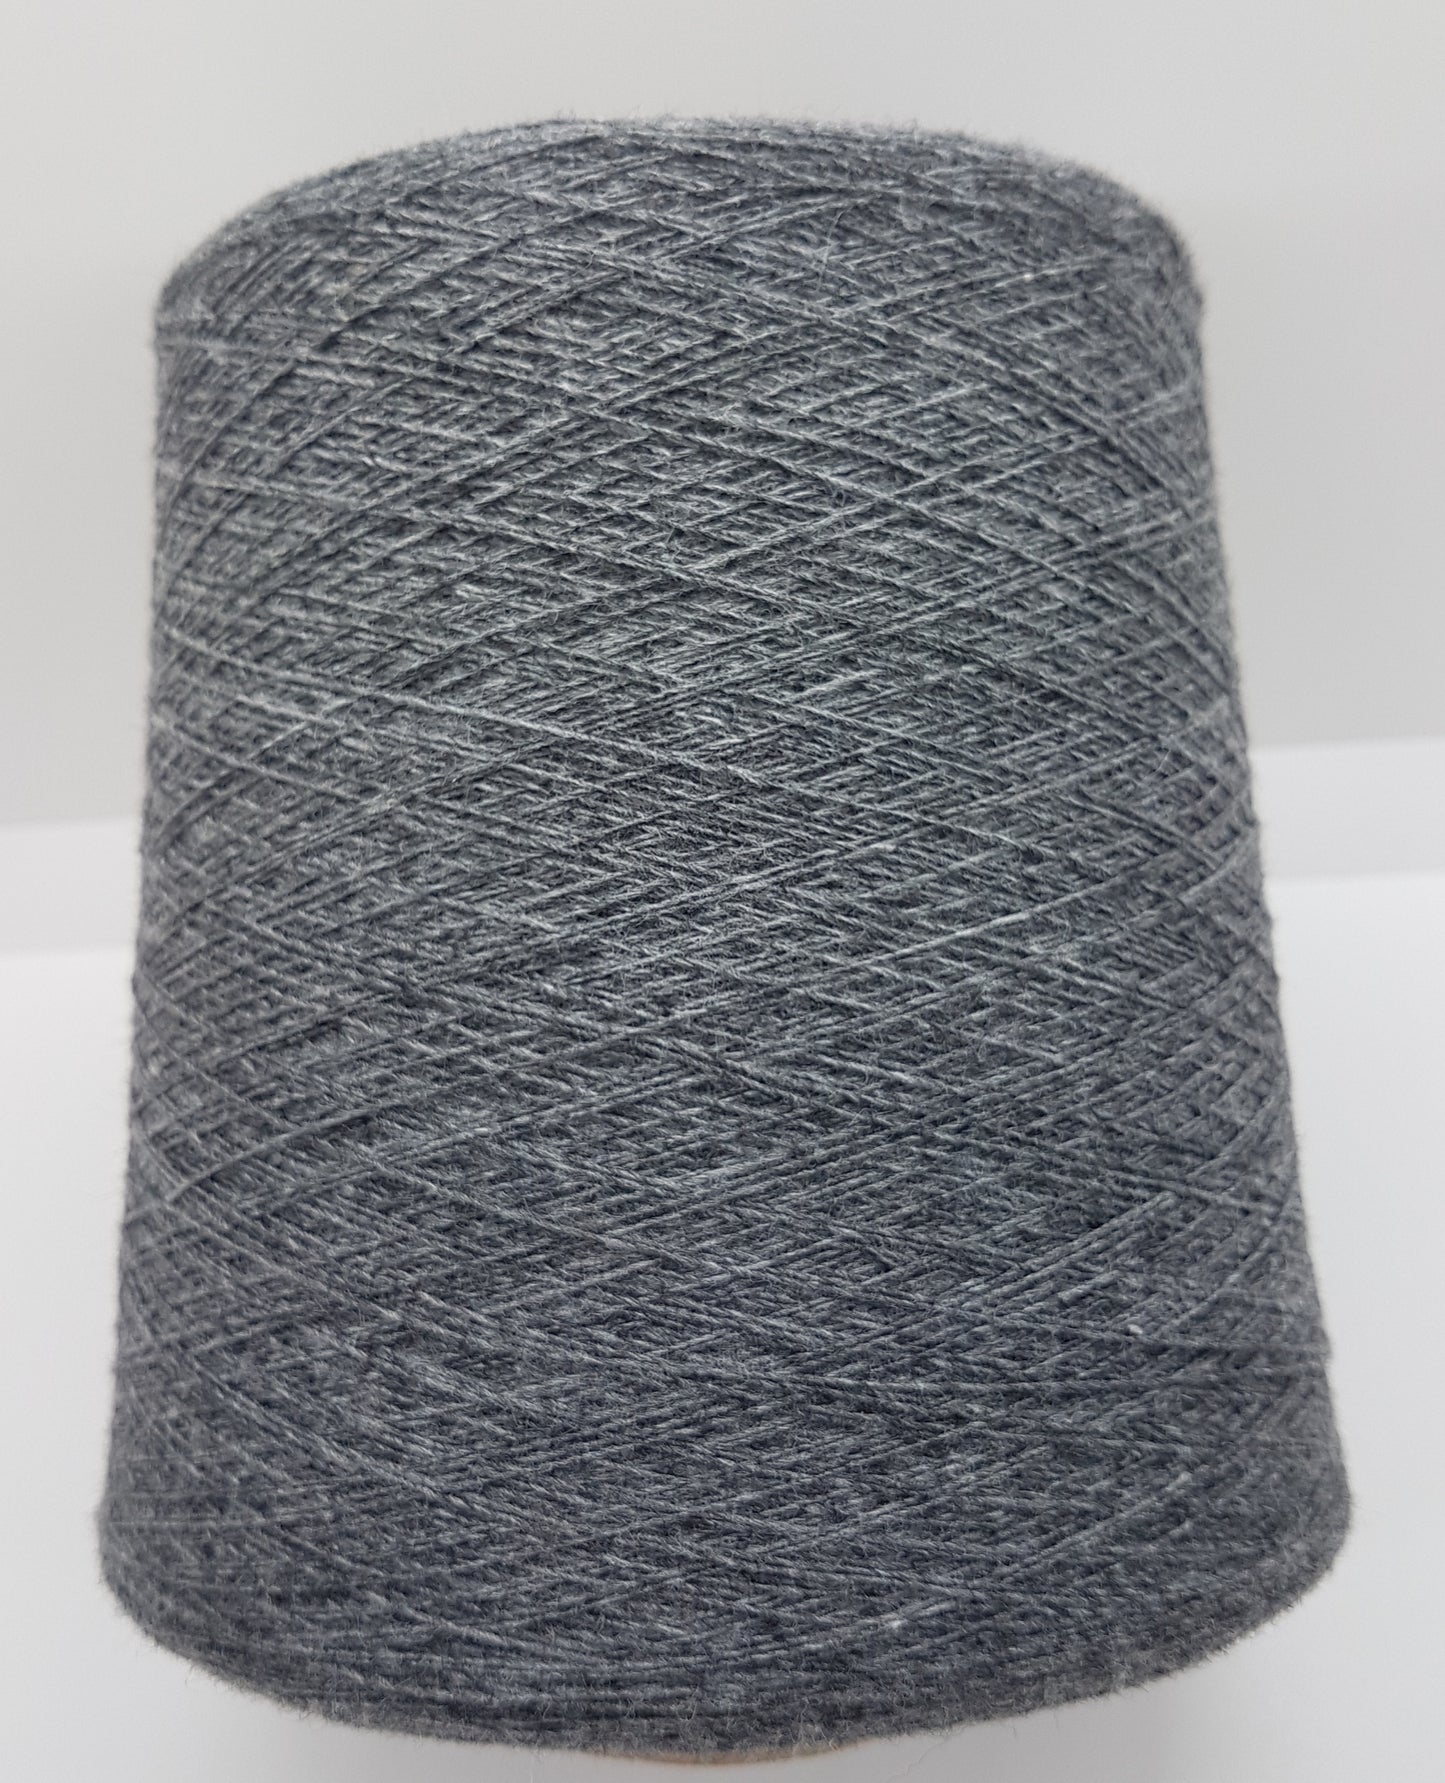 100g Cashmere laine en laine italien gris et couleur asphalte noire N.269